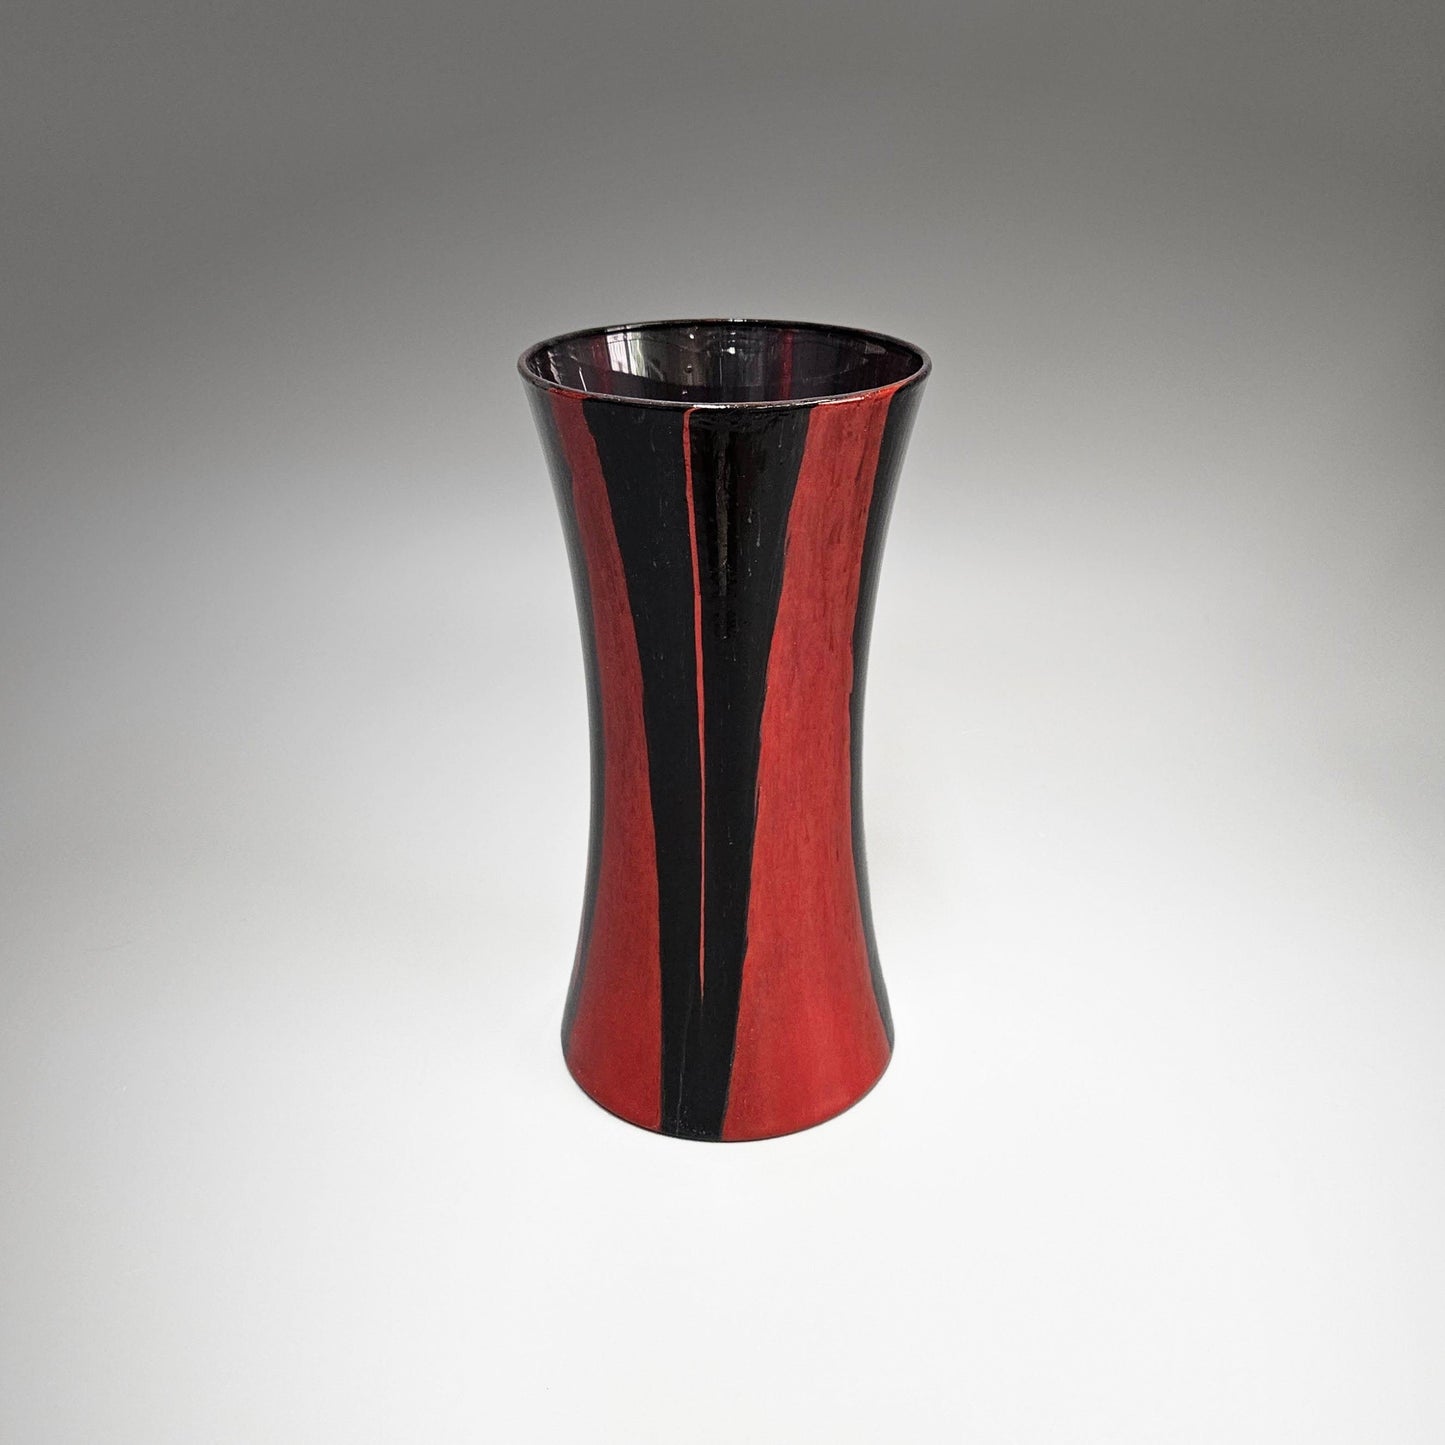 Abstract Fluid Art Glass Vase in Red Black | Modern Tall Flower Vase